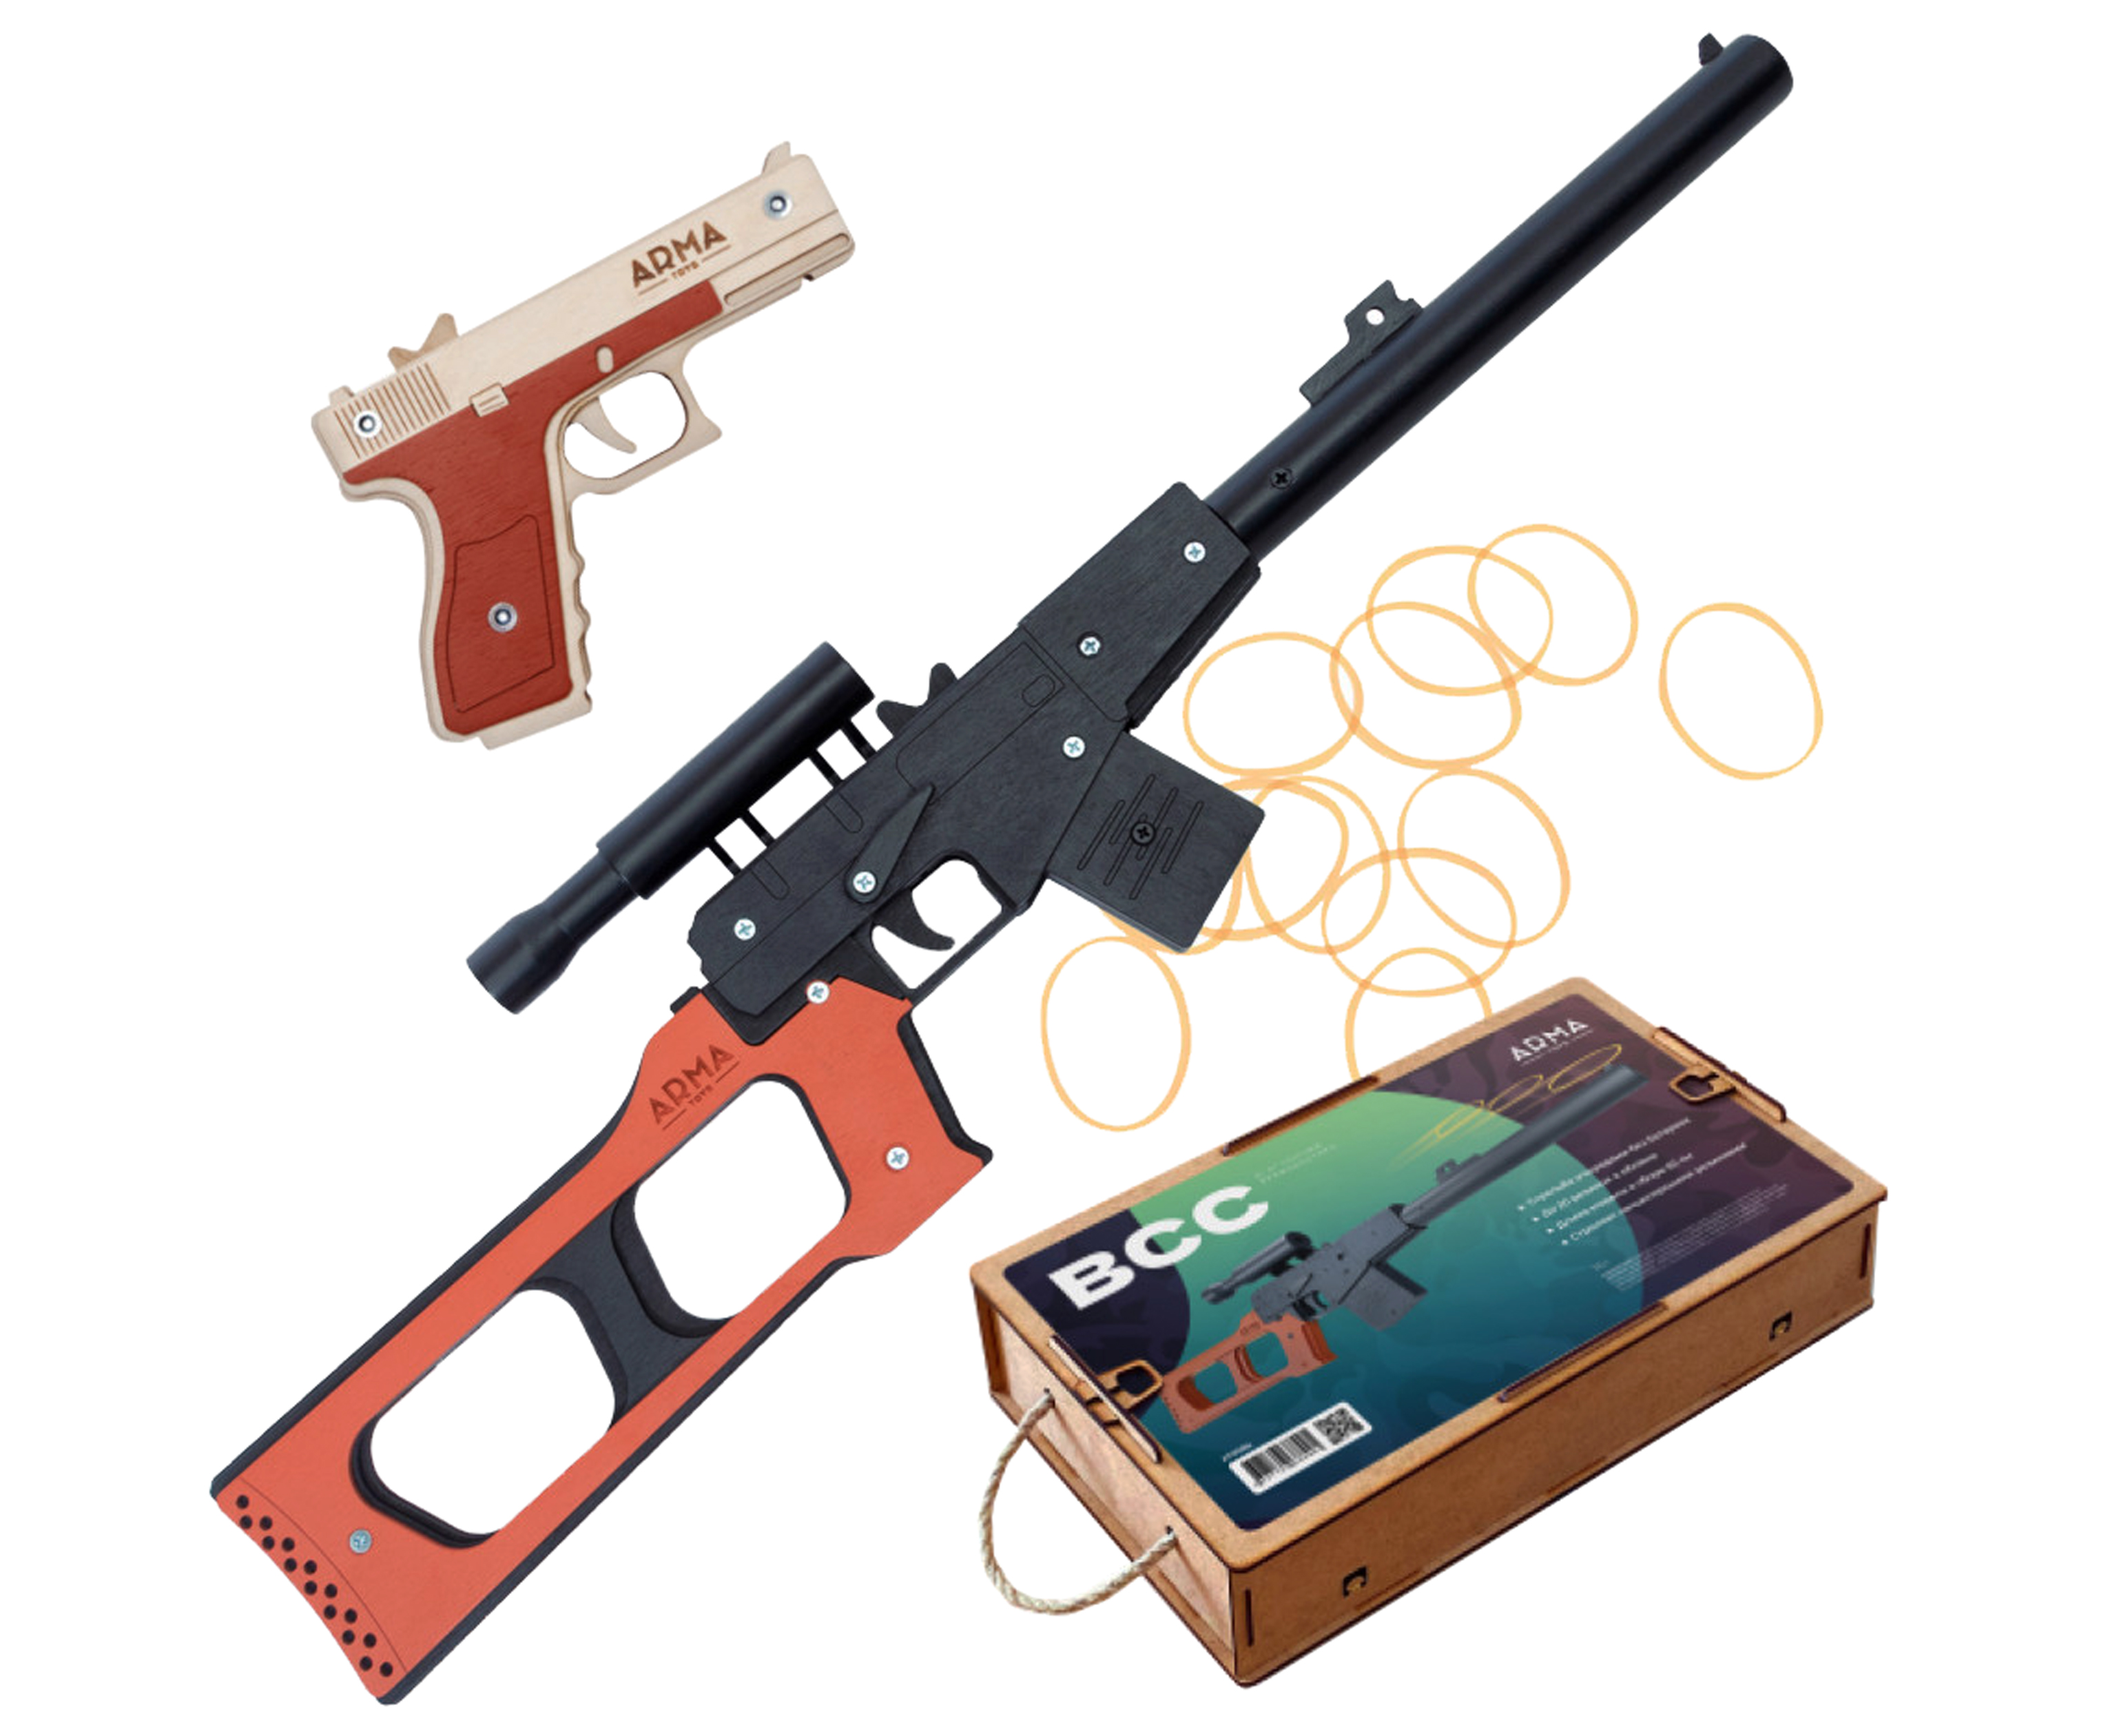 Набор игрушечных резинкострелов Arma toys Спецназ ГРУ пистолет Glock,винтовка ВСС Винторез набор резинкострелов arma toys спецназ фбр 2 винтовка m4 пистолет глок at510